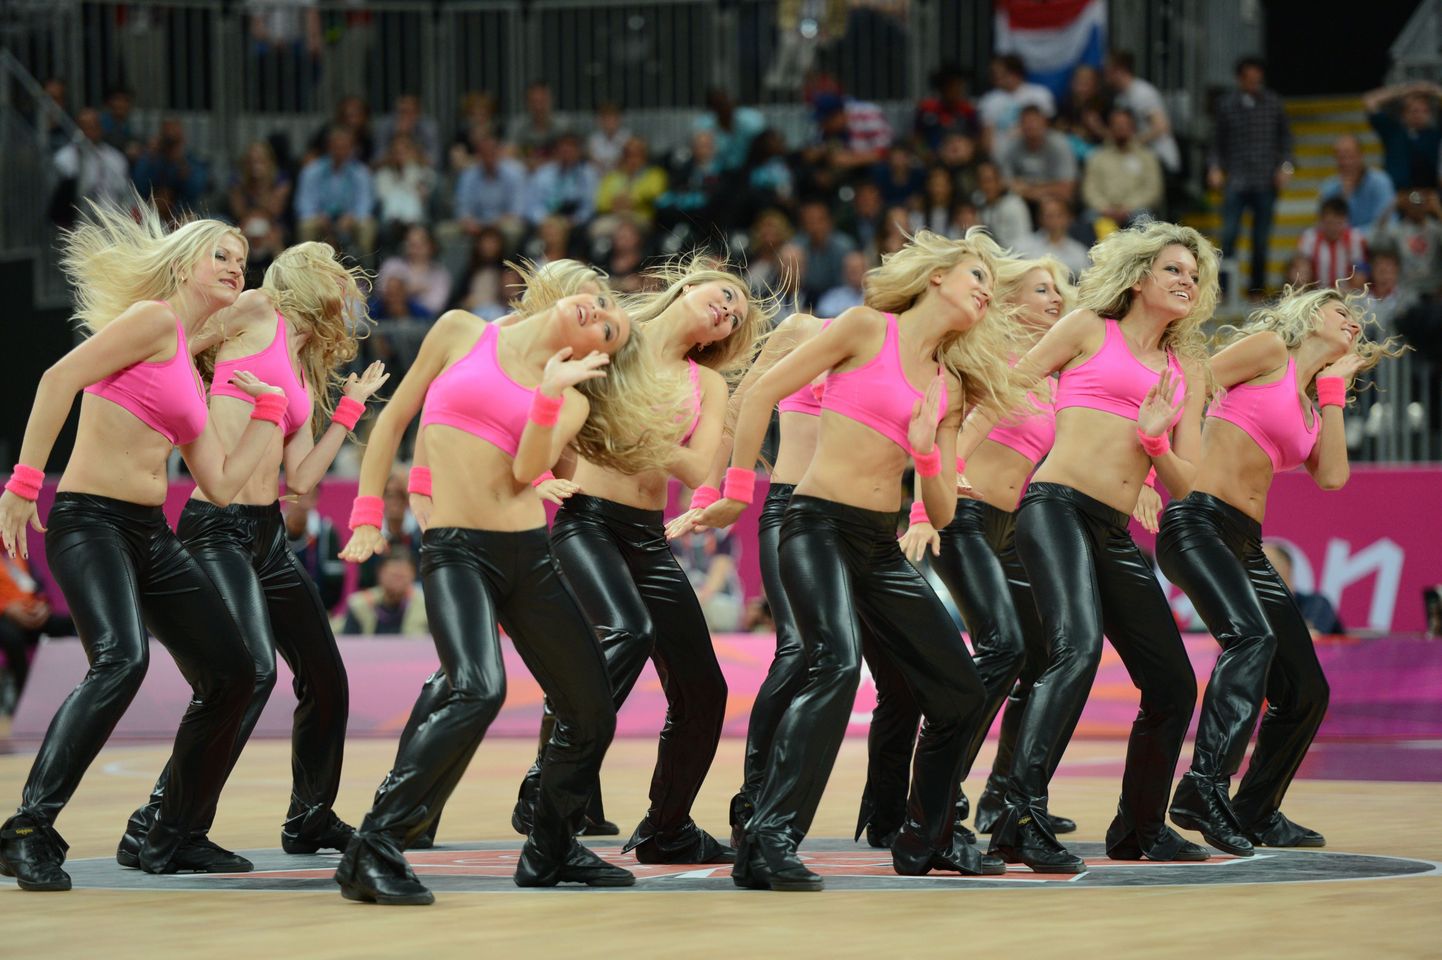 Londoni olümpiamängude korvpalliturniiril pakuvad pealtvaatajatele silmailu atraktiivsed tantsutüdrukud.